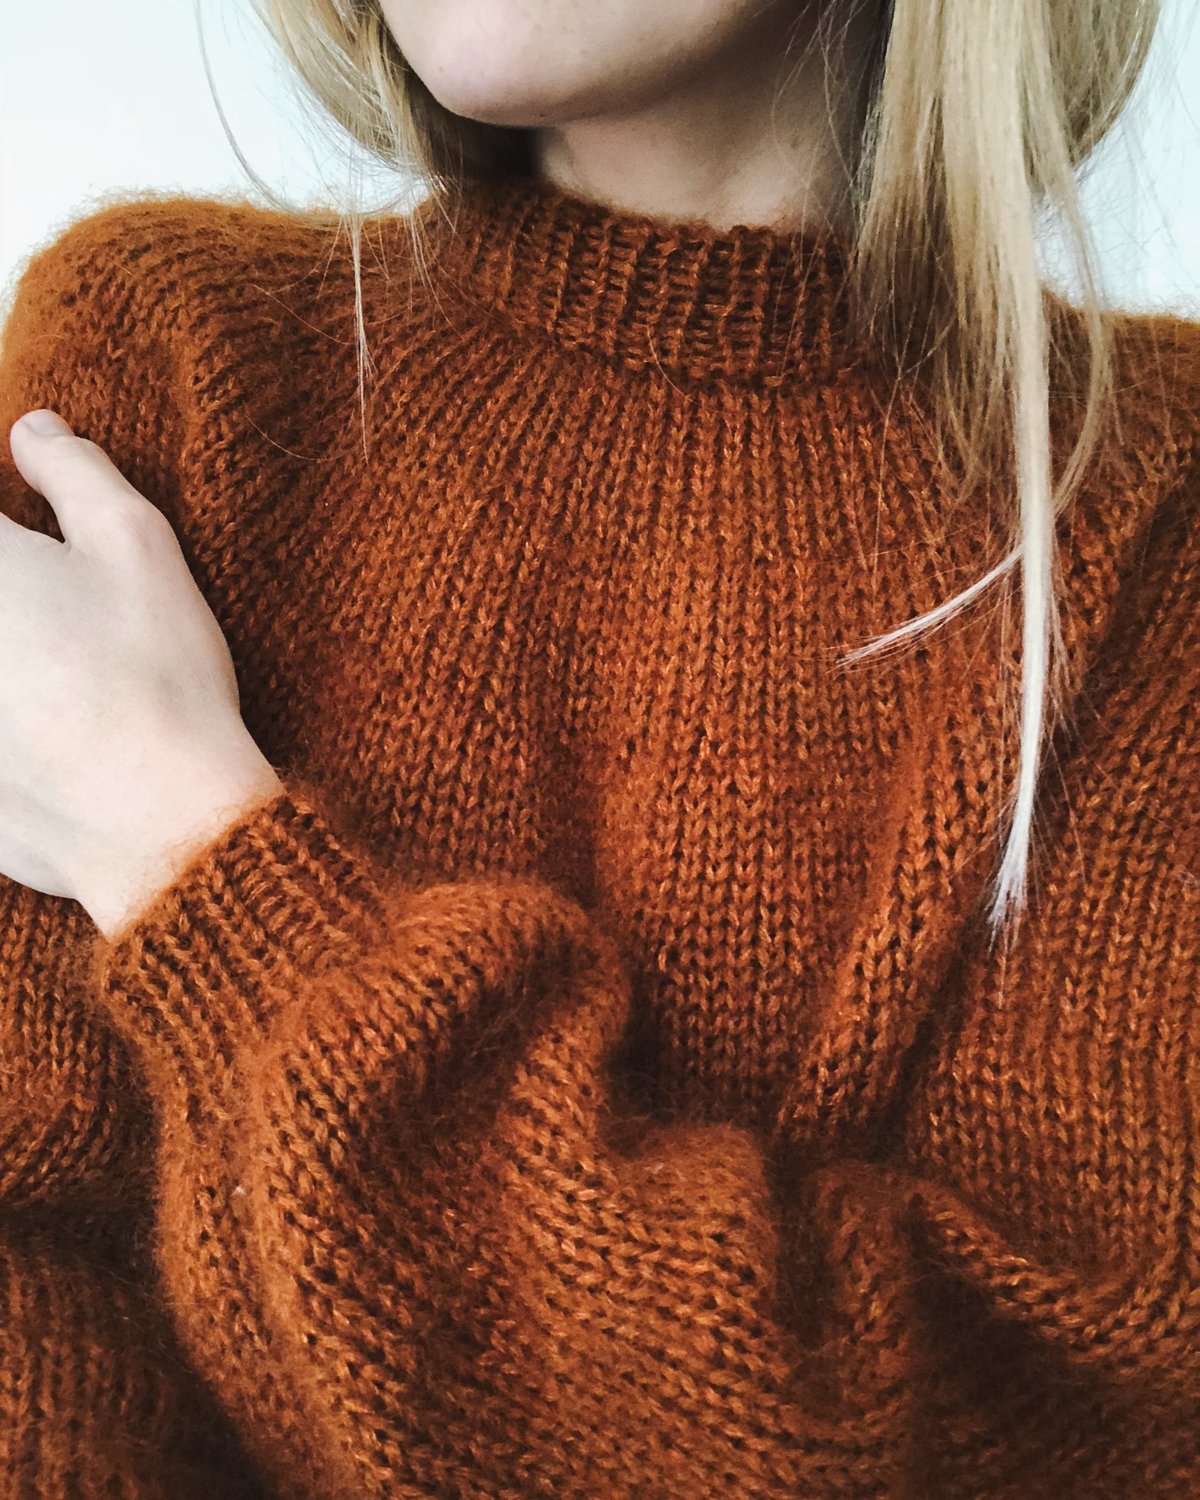 Novise Sweater - begynder strikkeopskrift fra PetiteKnit